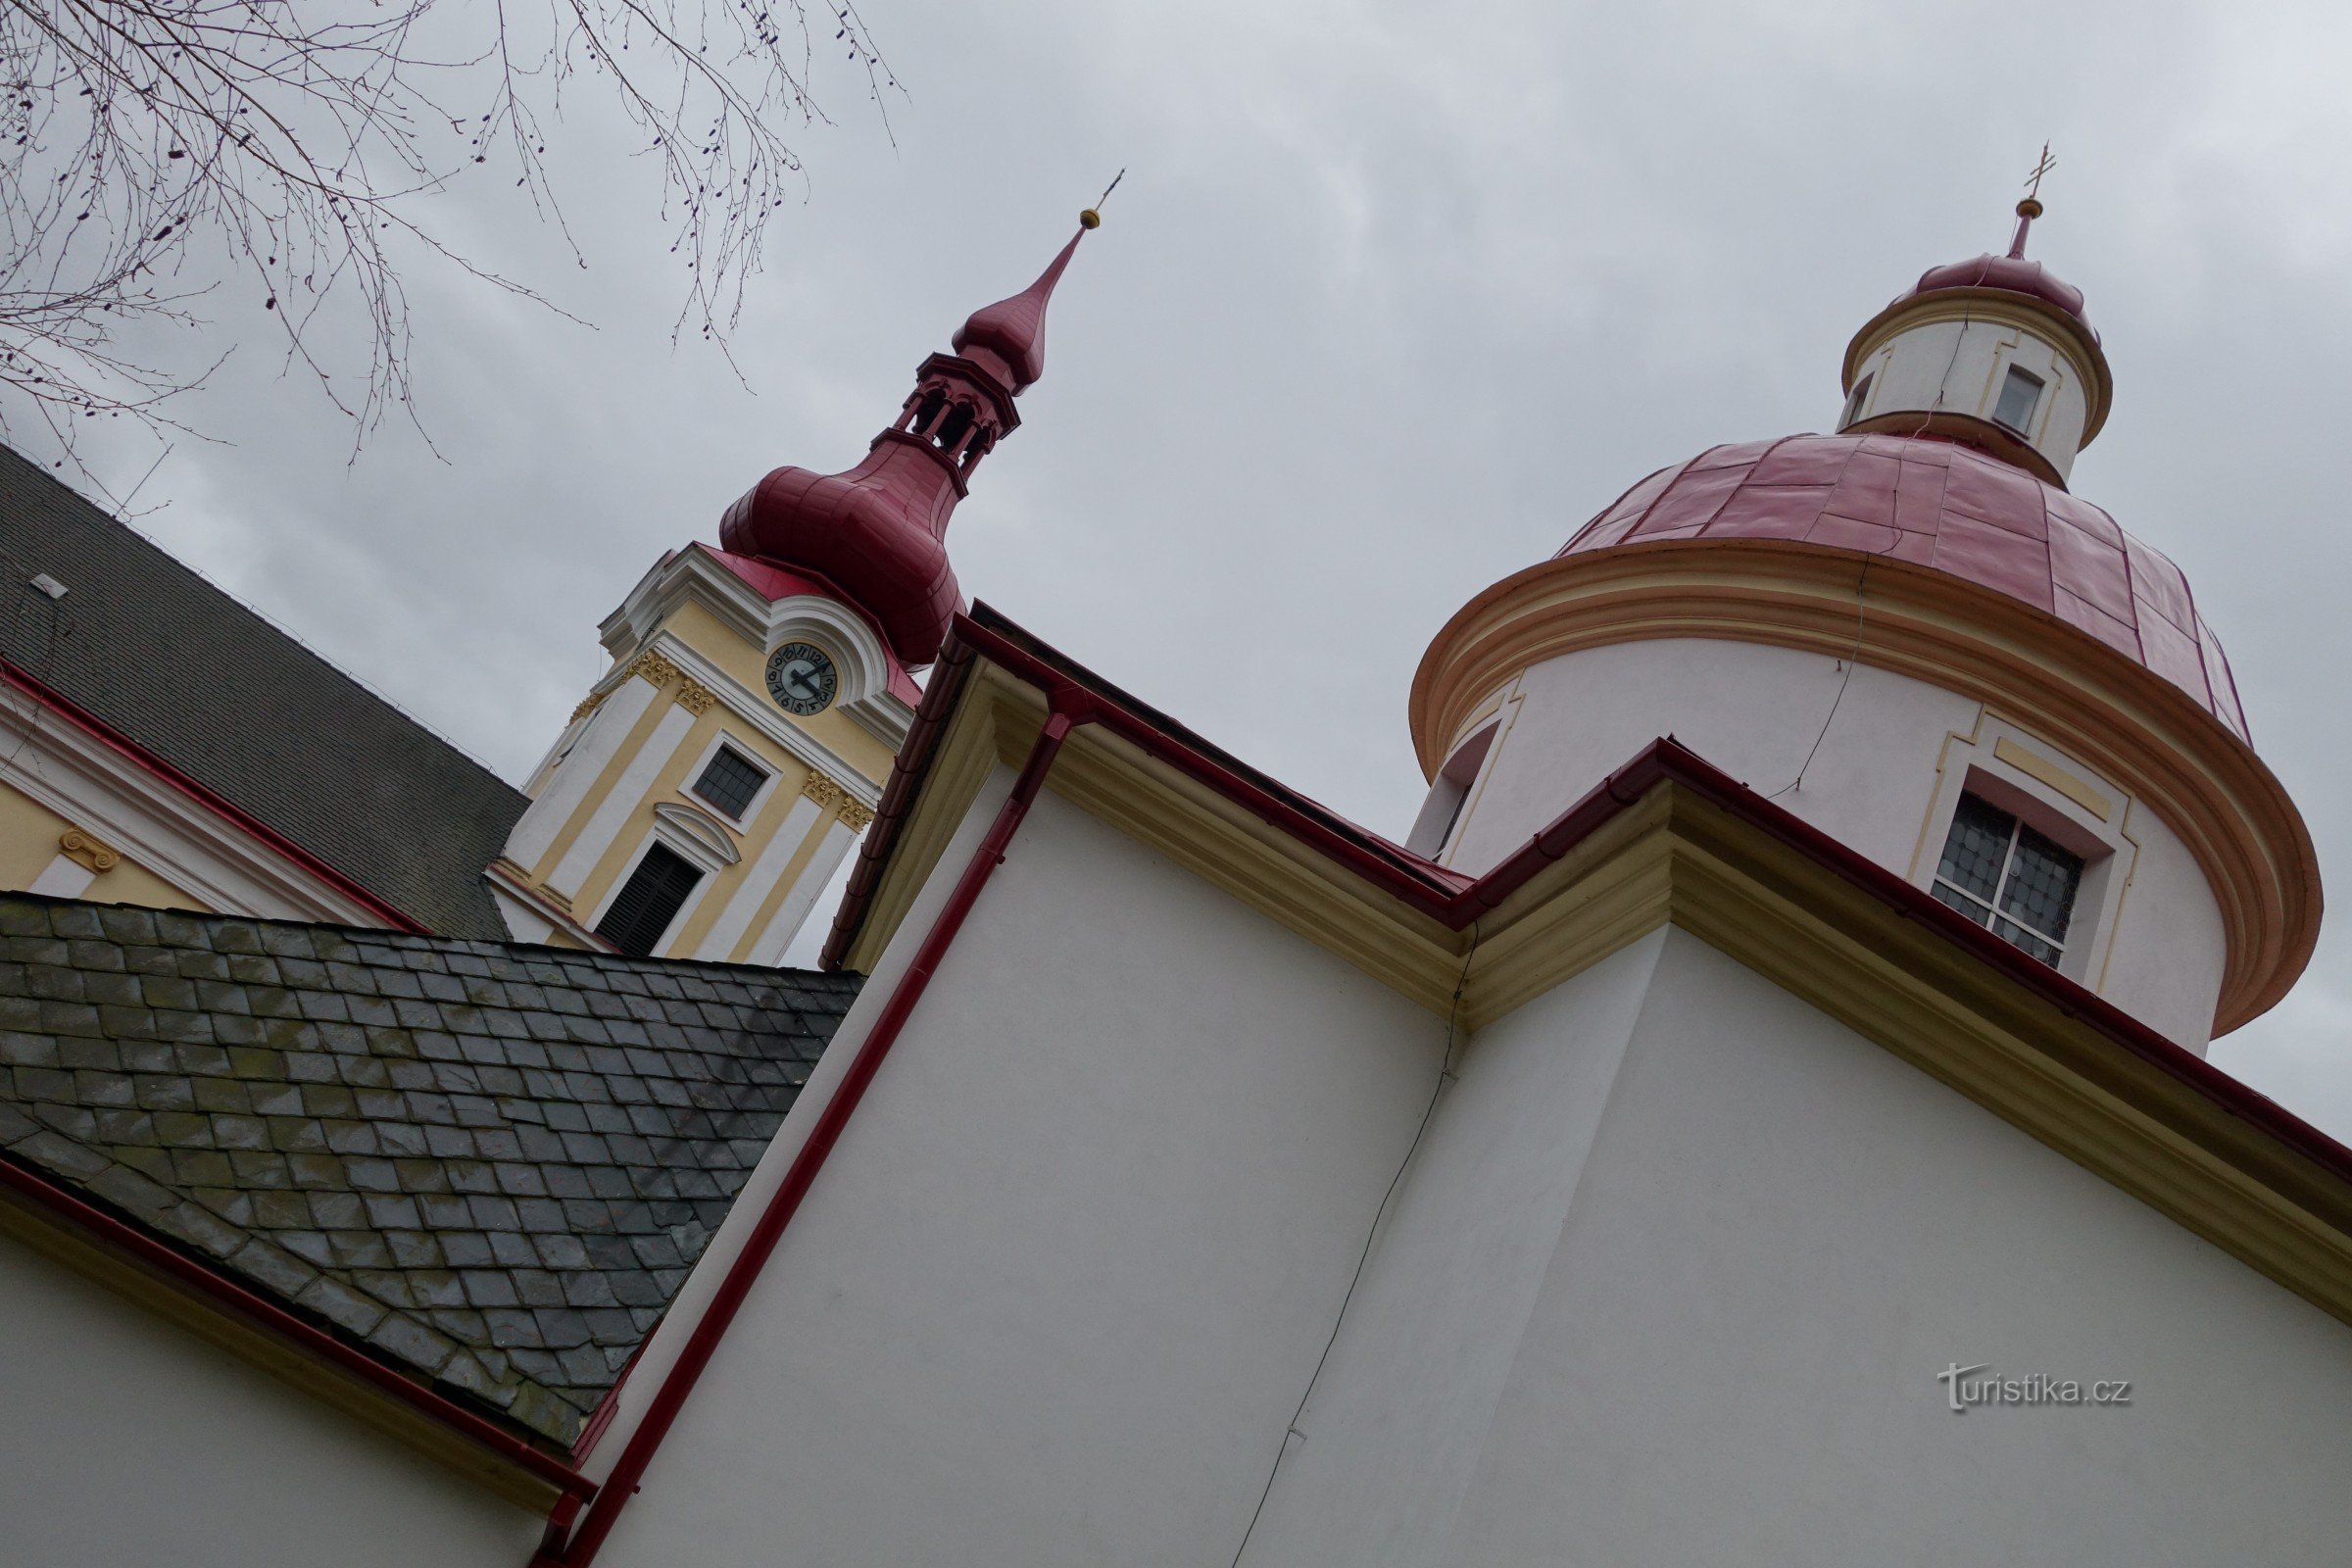 Pustiměř - St. Rotunda Pantaleona, mosteiro beneditino, capela de S. Anne e a igreja de São Bento